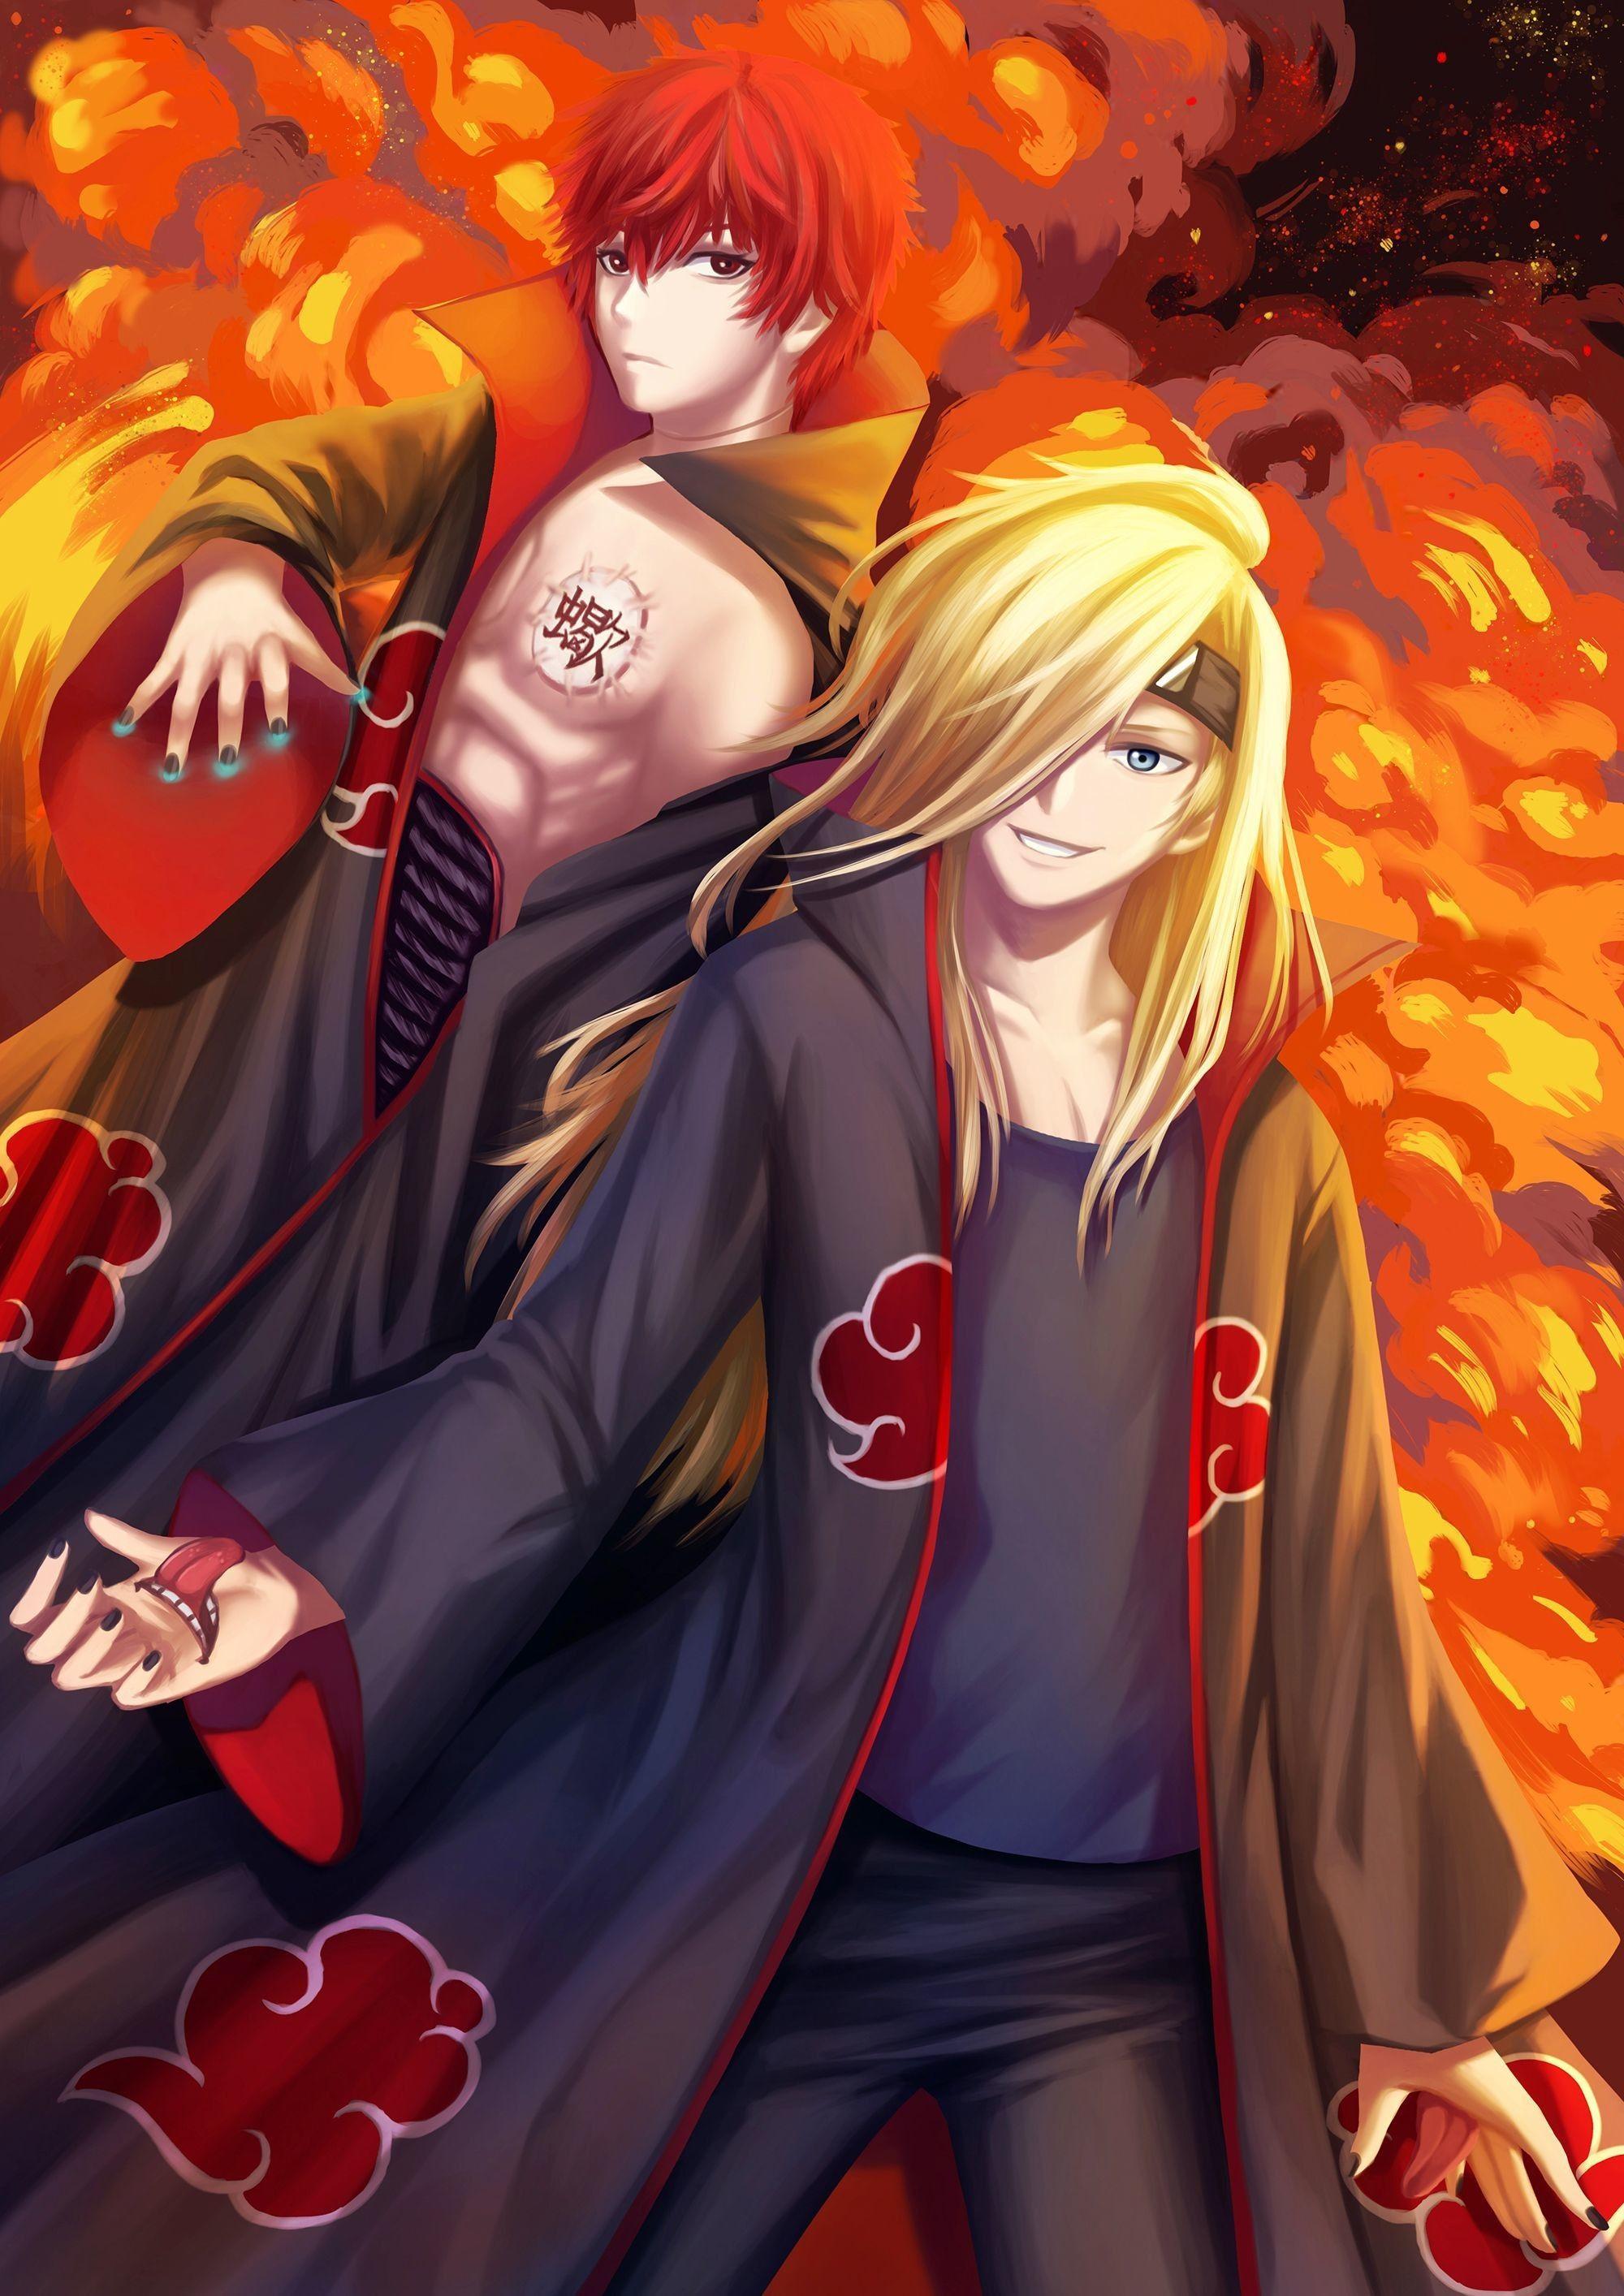 2000 x 2828 · jpeg - Sasori Naruto Wallpapers - Top Free Sasori Naruto Backgrounds ...